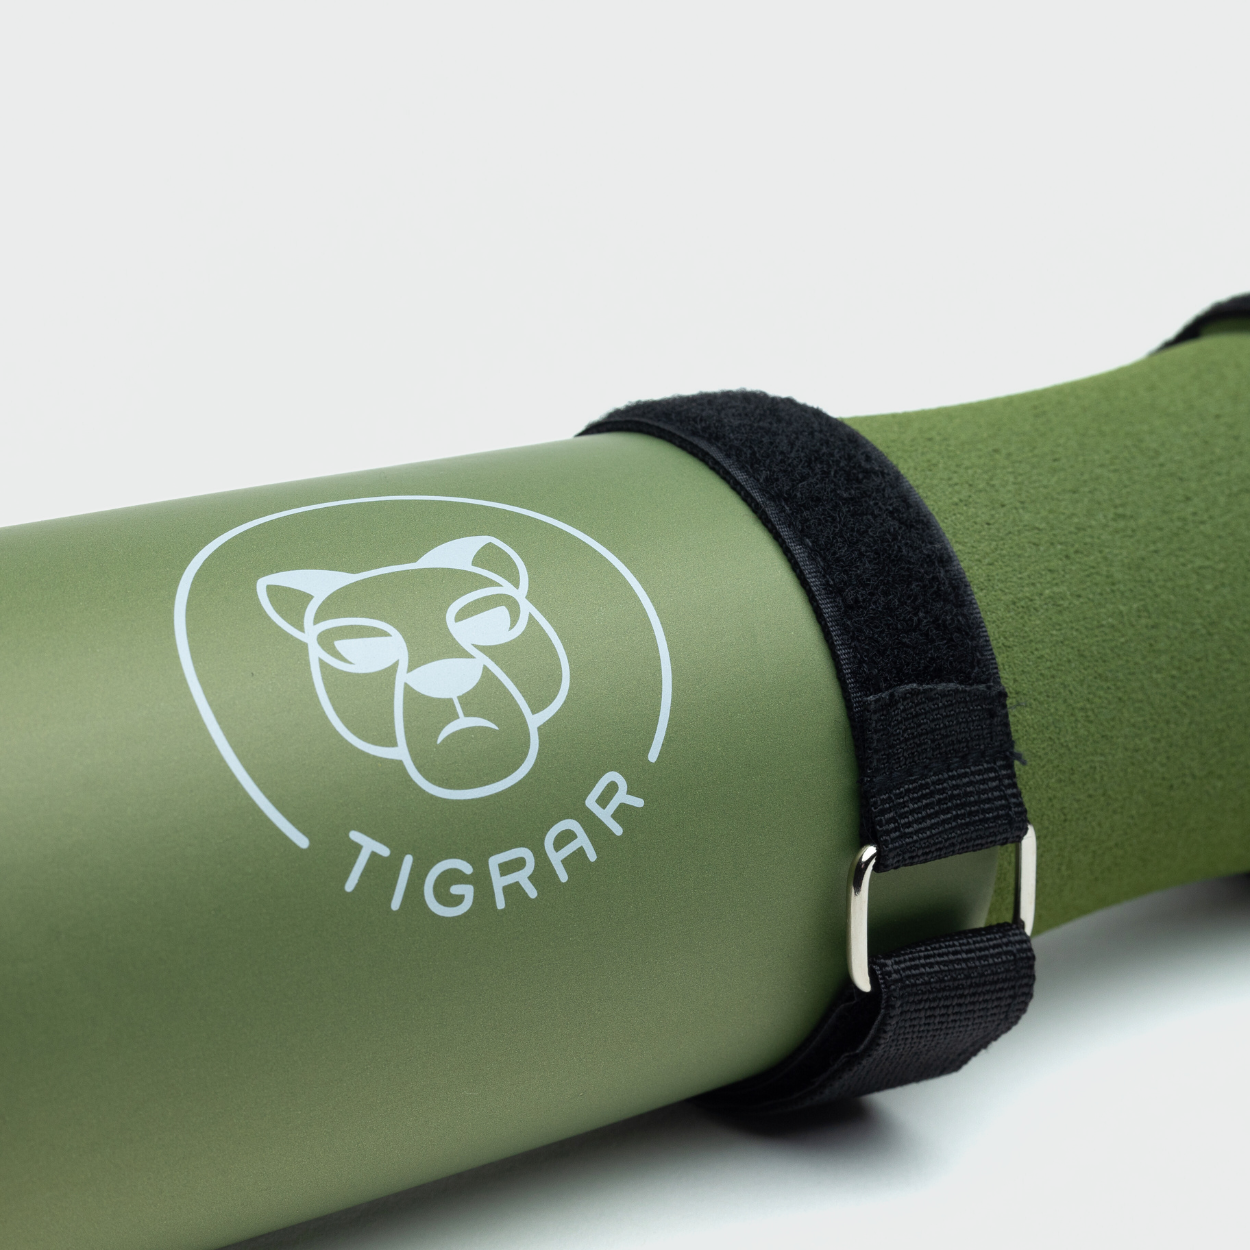 Detailweergave van de groene Tigrar barbell pad, perfect voor dagelijkse training.